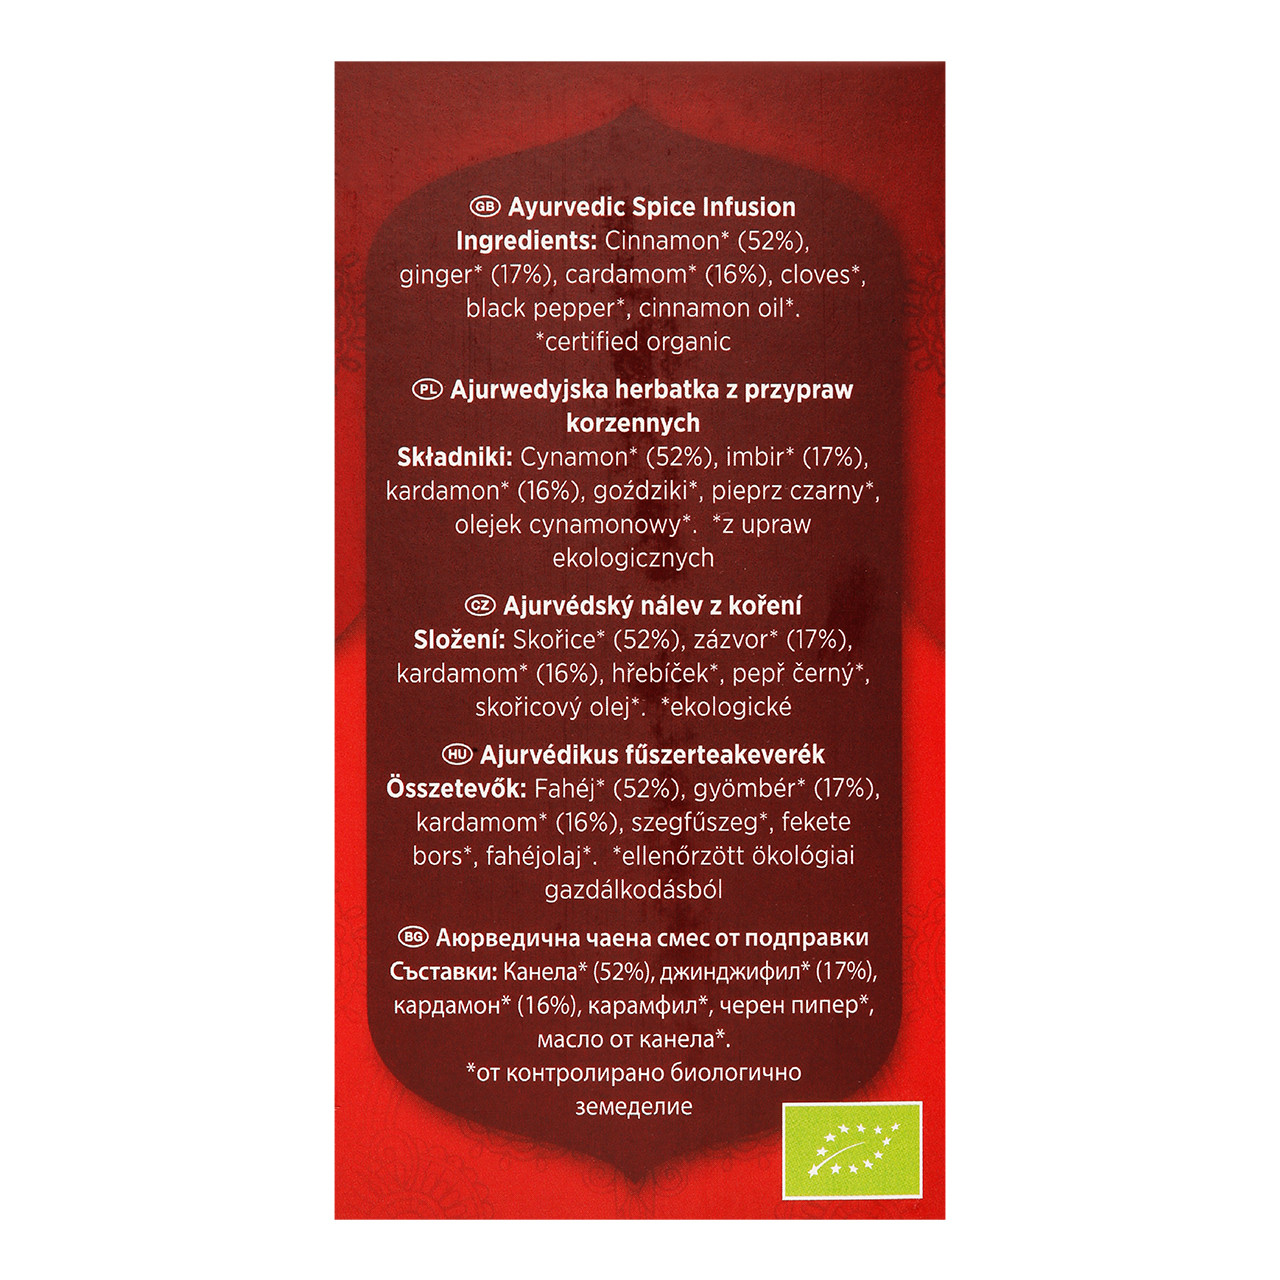 Classic Yogi Tea – 17 infusions – Estrella Verde